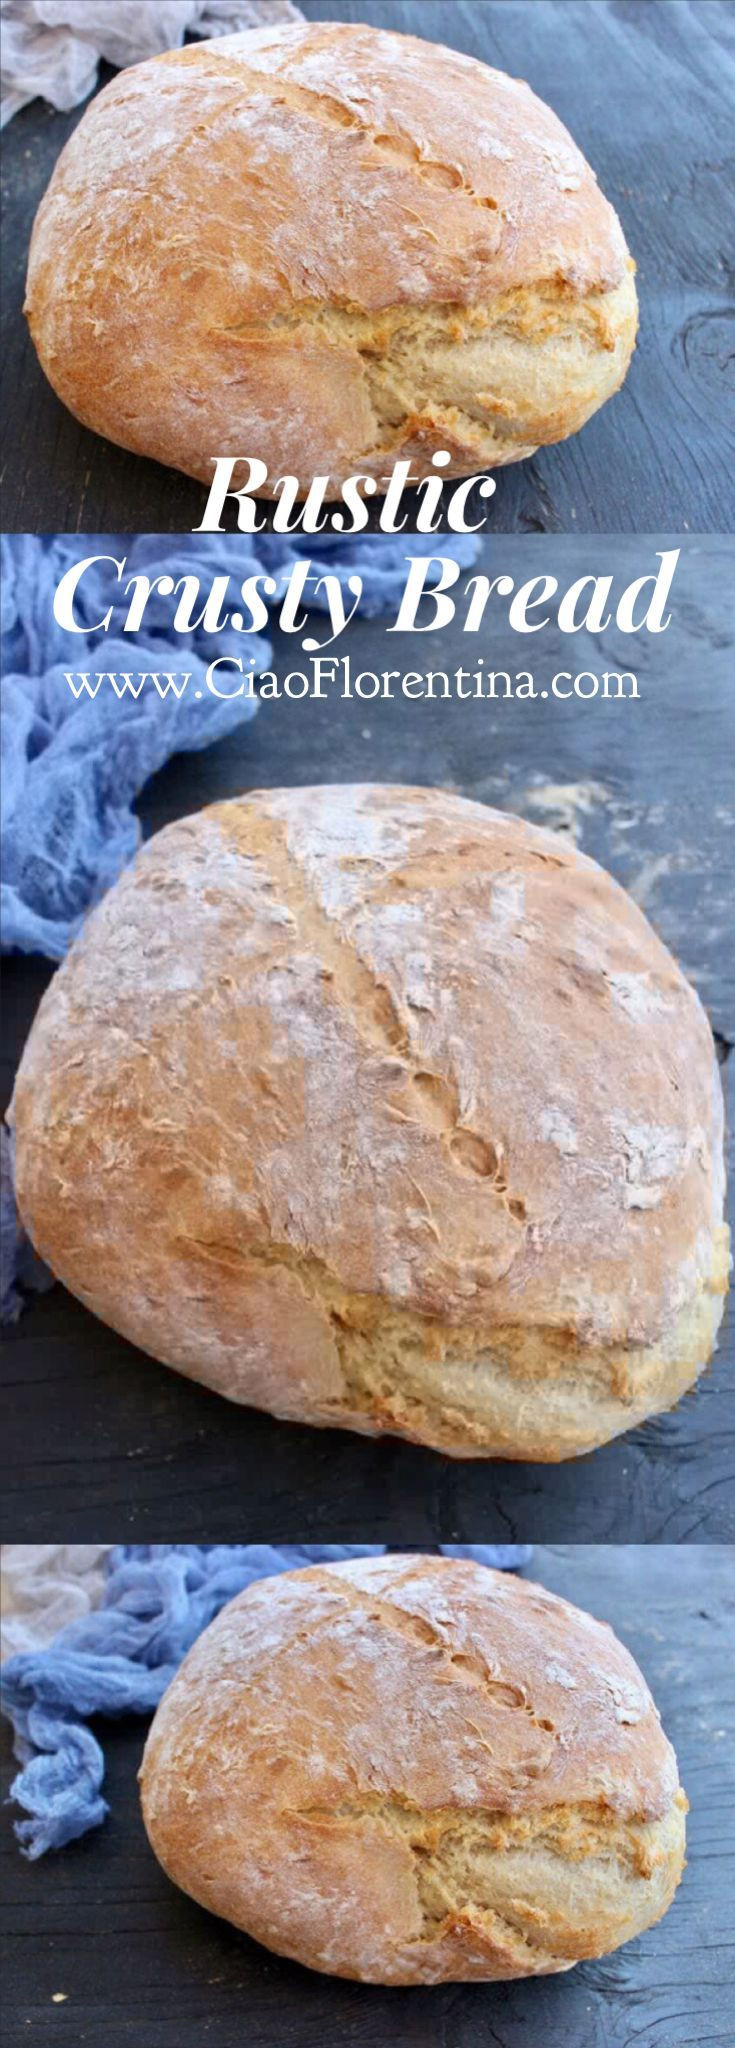 Crusty Italian Bread
 Rustic Crusty Bread Recipe Bread Recipes GALORE